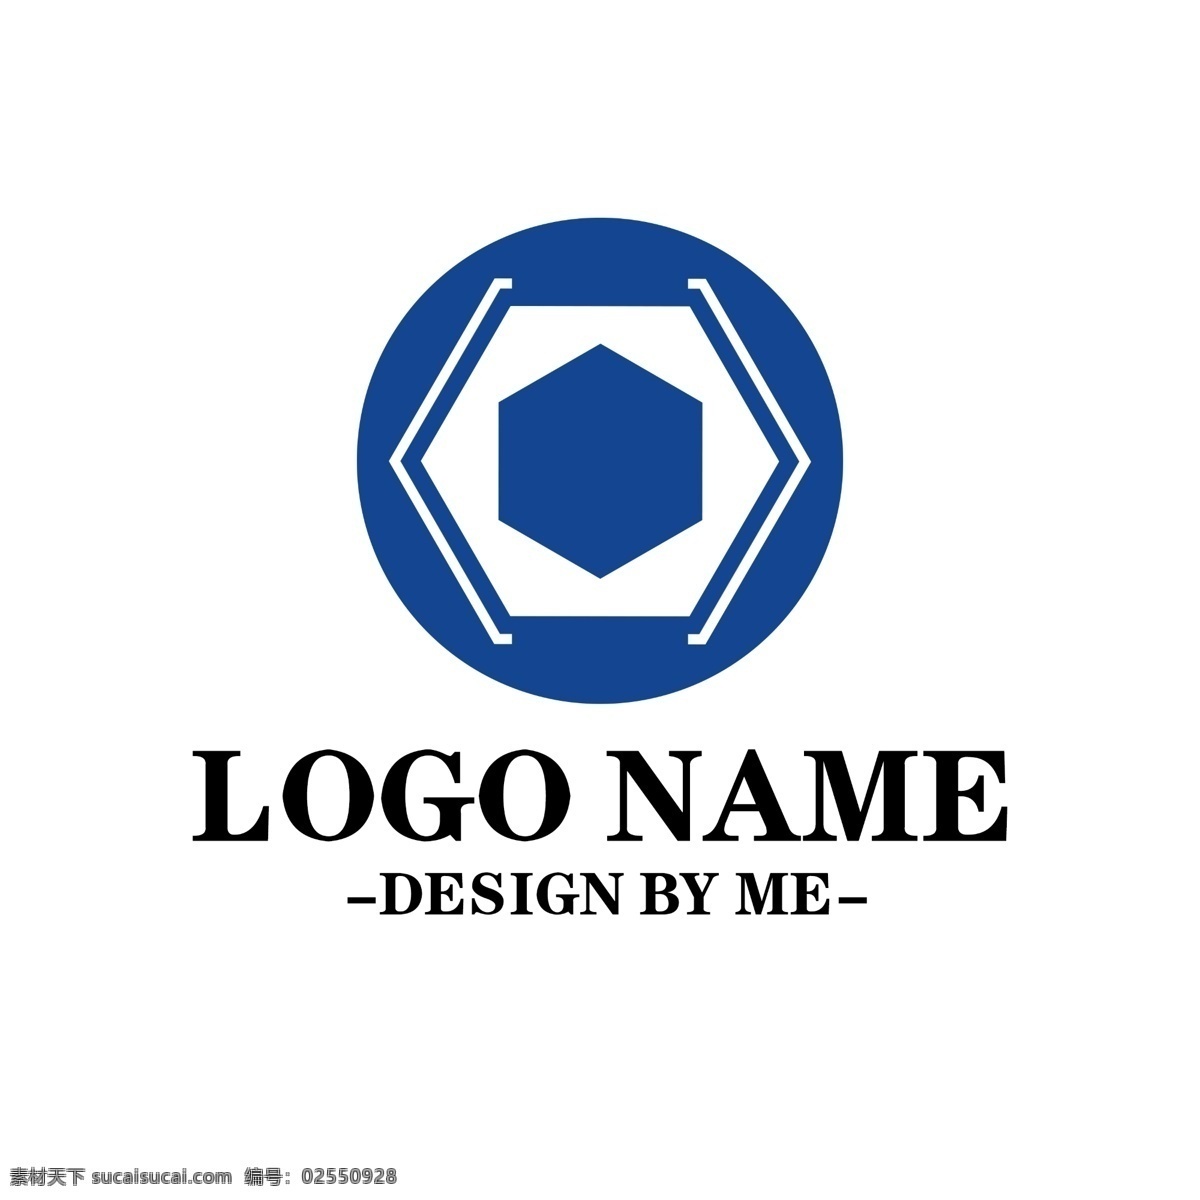 企业 公司 标识 商标 logo 标志